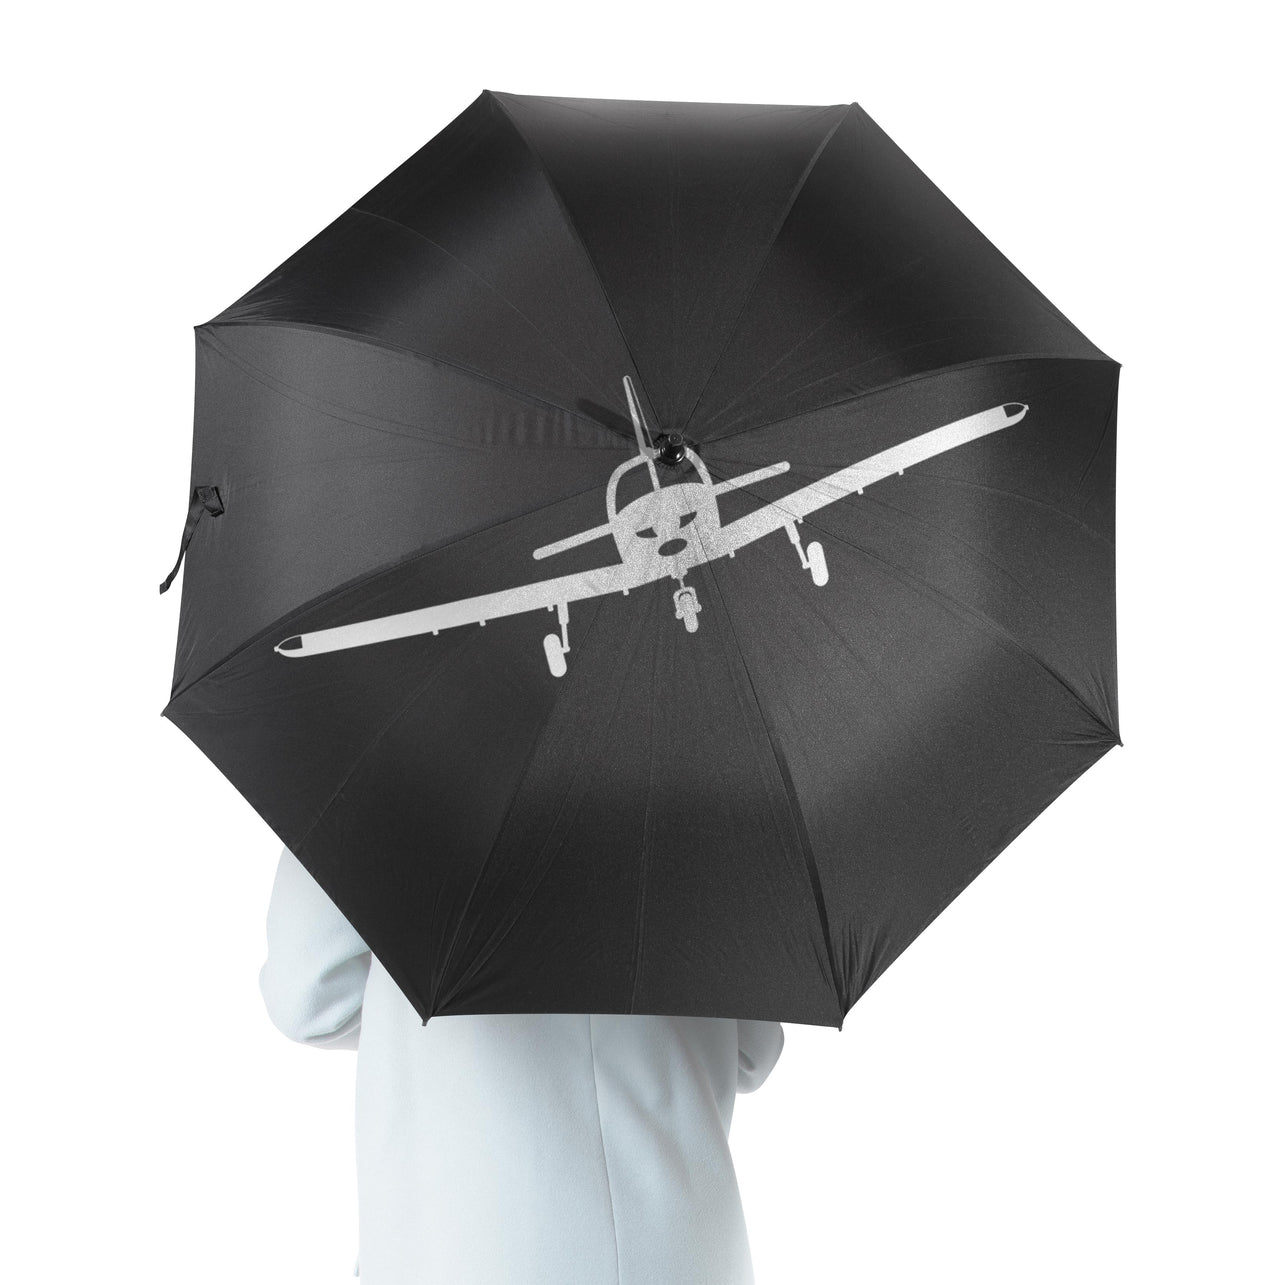 Piper PA28 Silhouette Plane Designed Umbrella